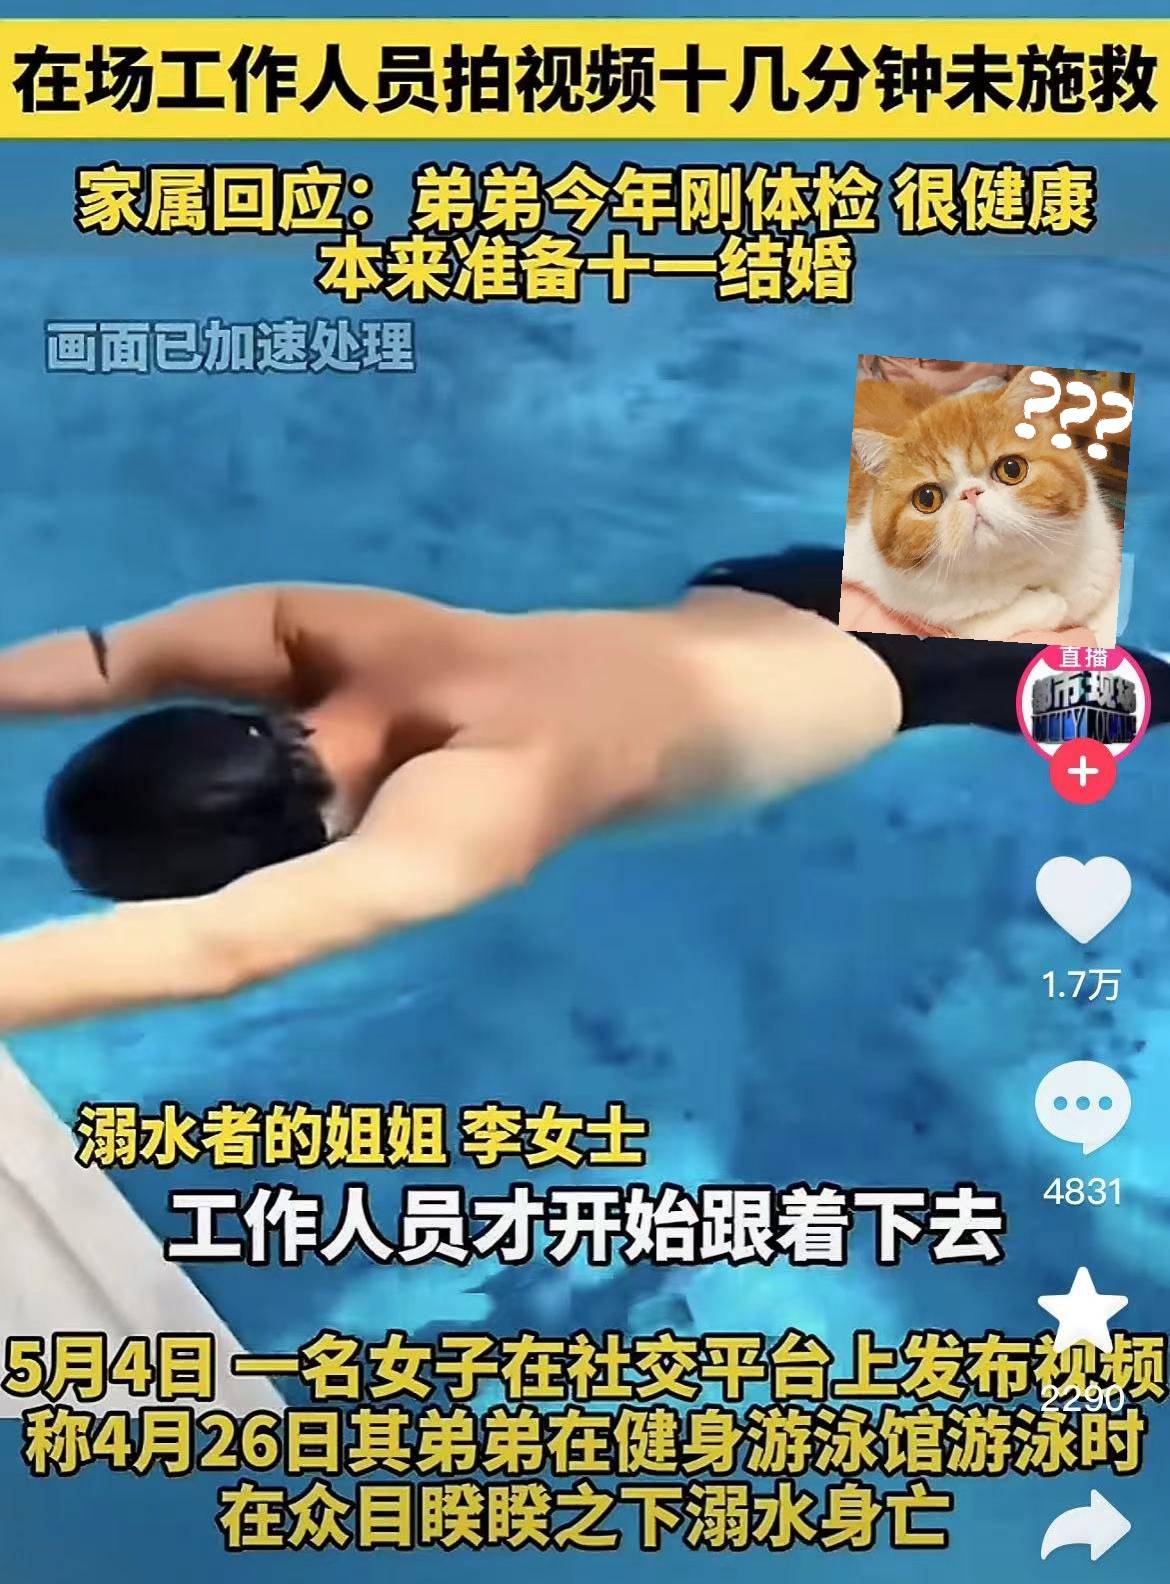 郑州游泳馆教练溺亡后续，亲姐提出质疑，原本悲剧有避免的机会